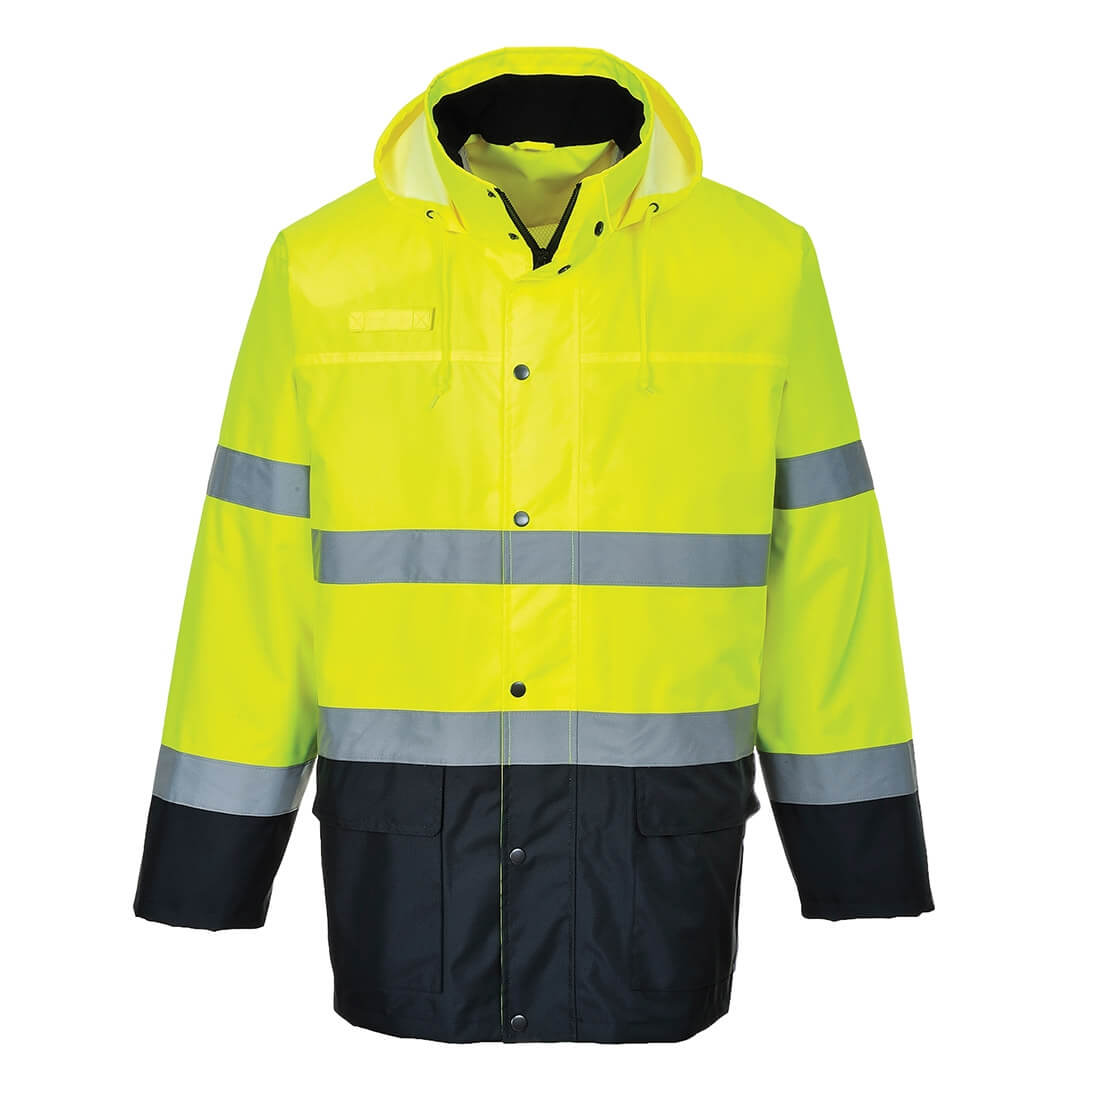 Leichte zweifarbige Verkehrs-Jacke - Arbeitskleidung